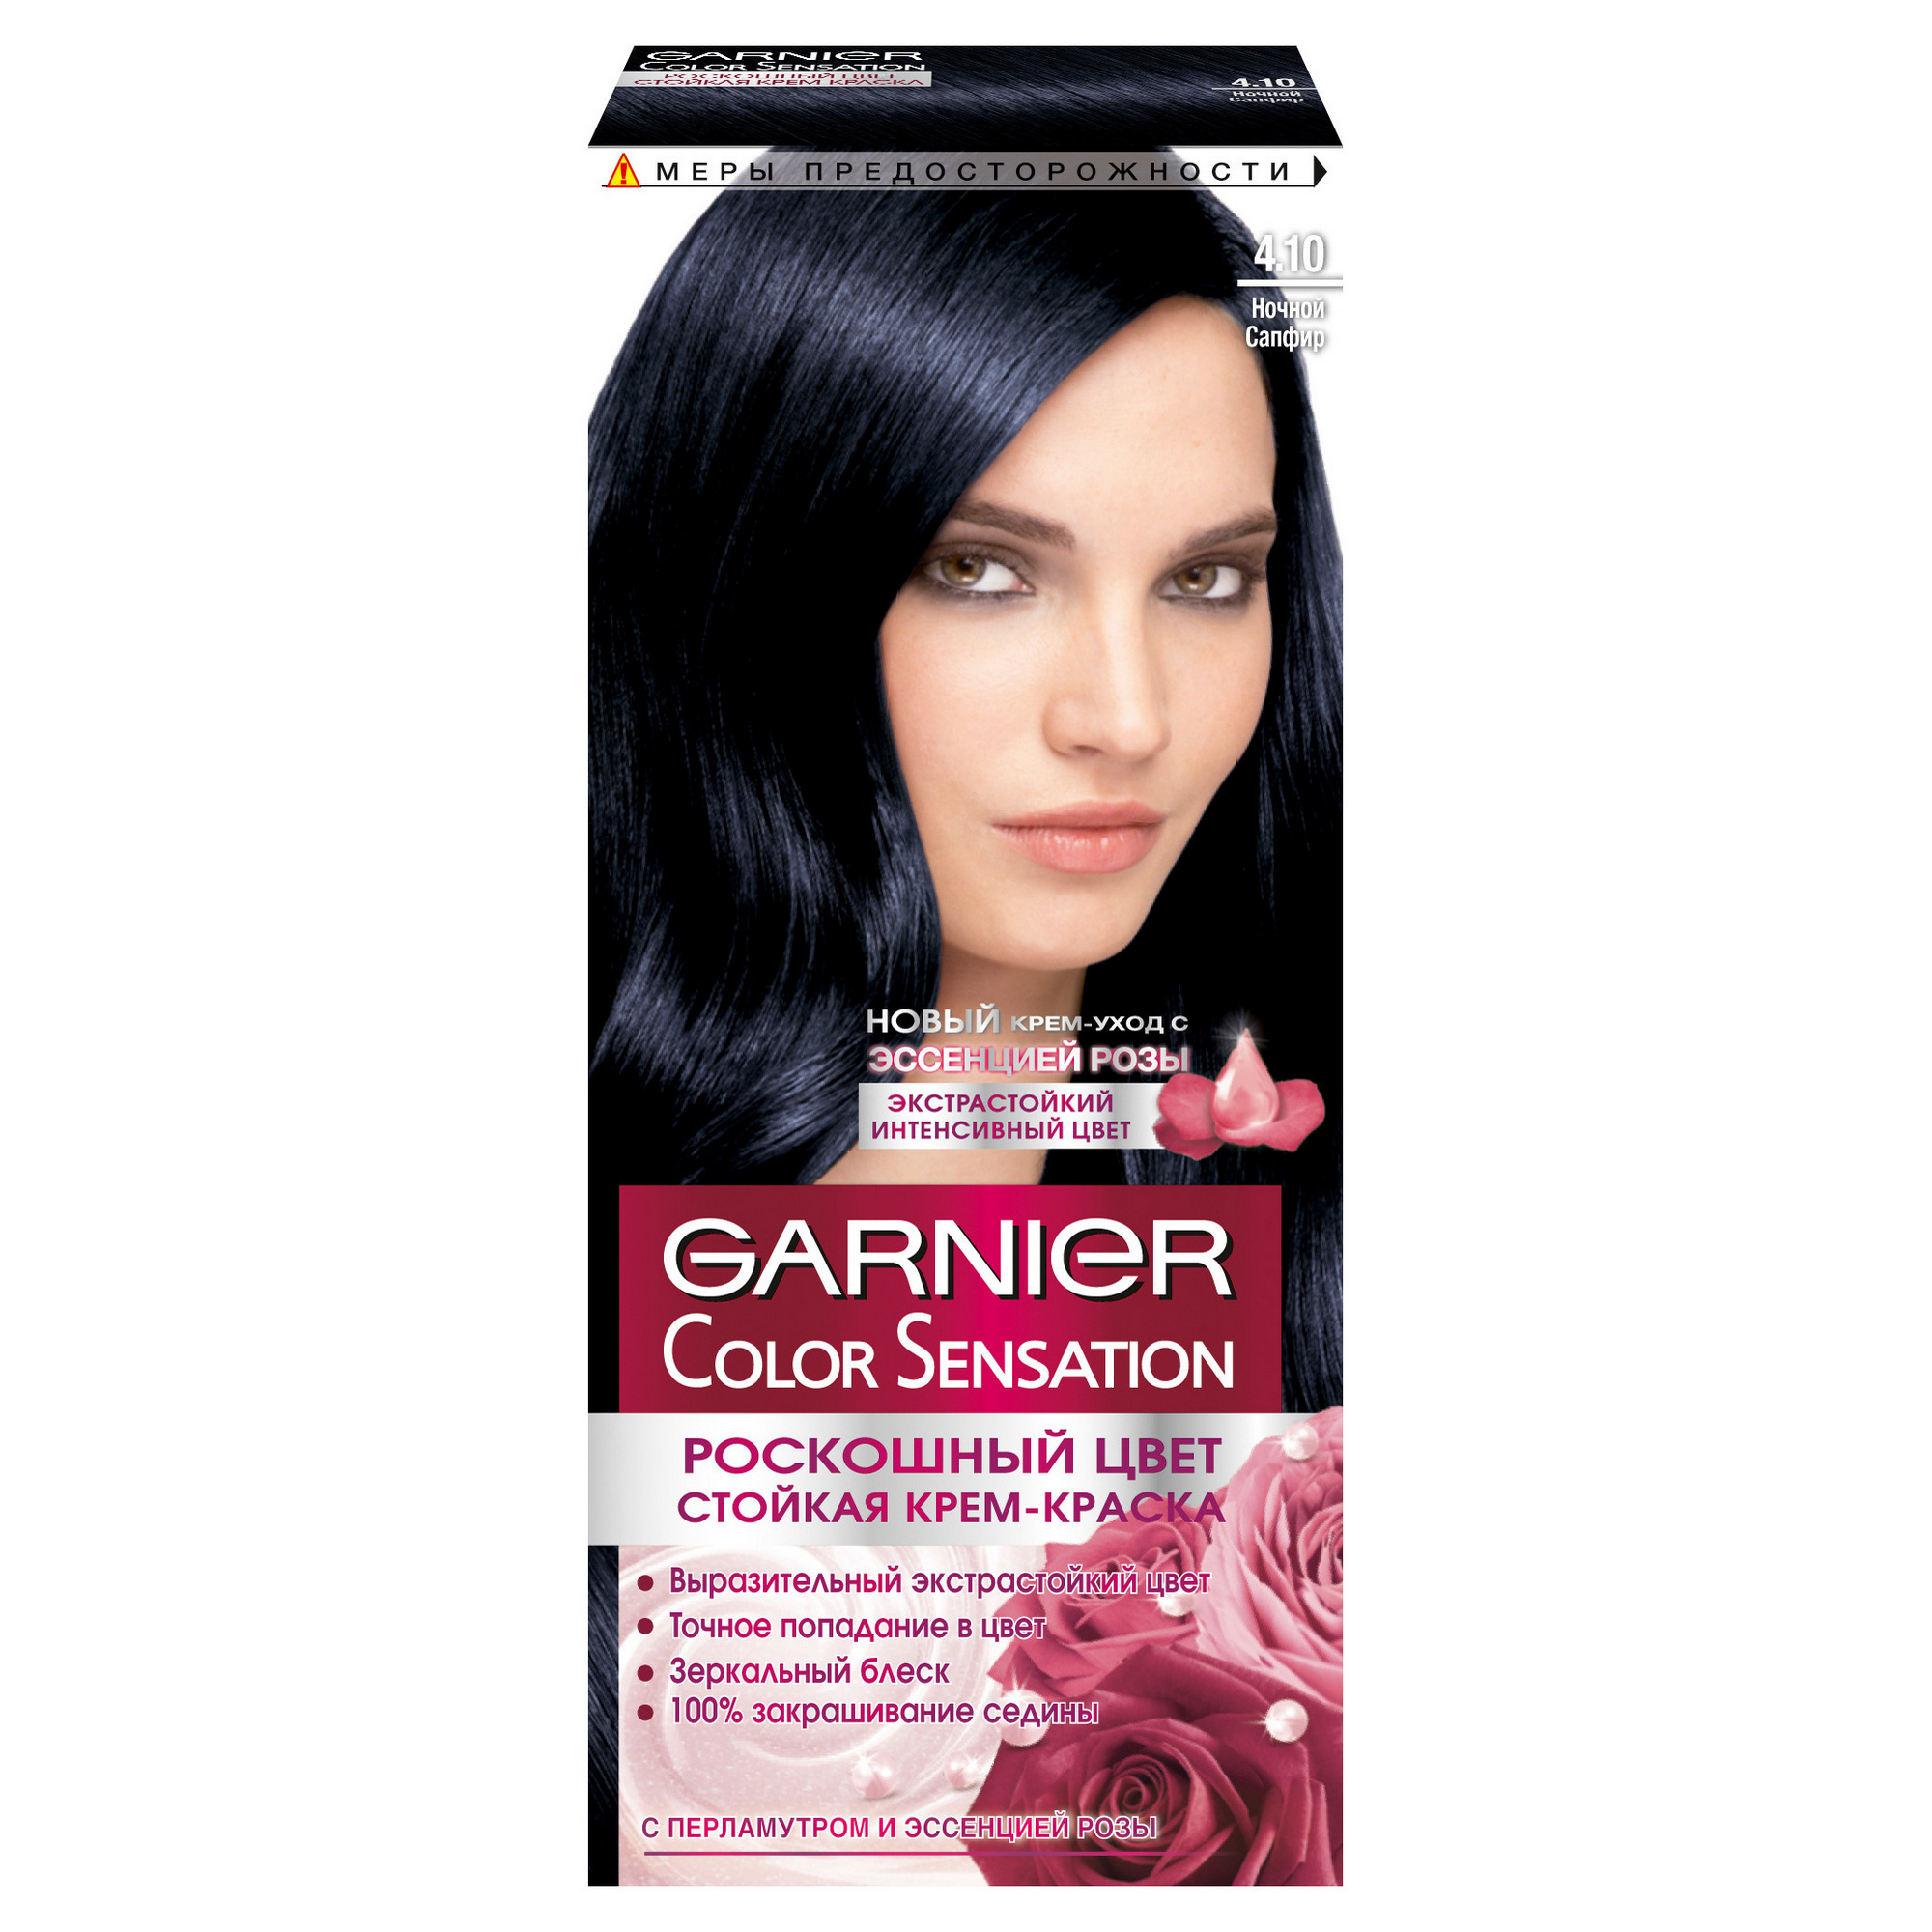 Краска для волос Garnier Color Sensation Ночной Сапфир тон 4.10 color fresh create infinite оттеночная краска для волос 81644556 247 ночной синий 60 мл